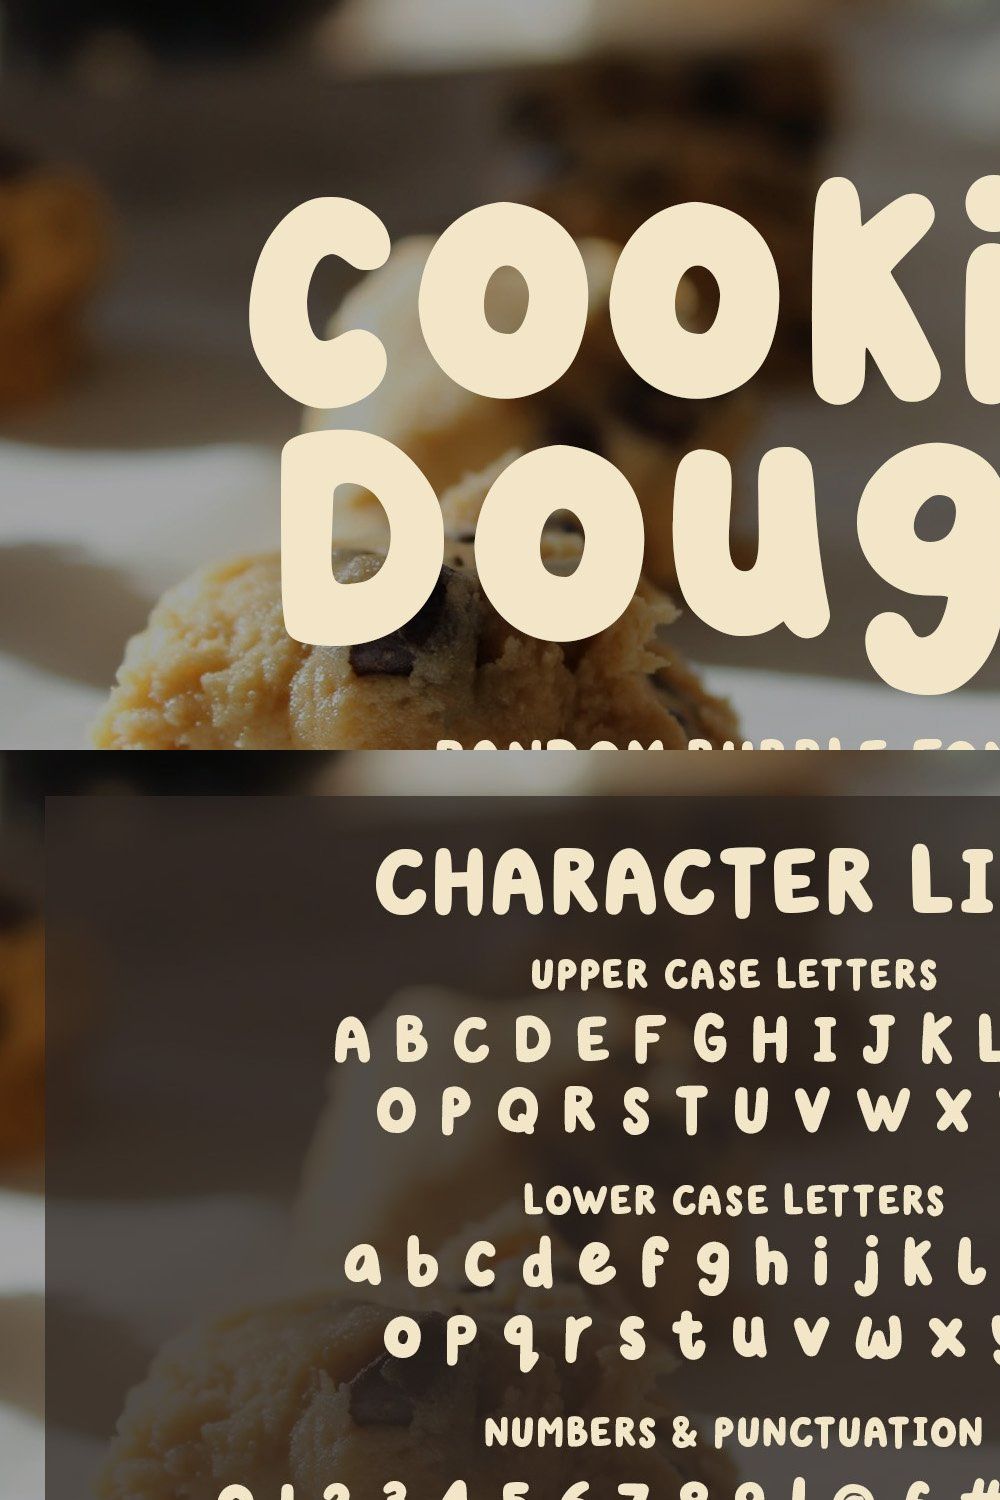 Cookie Dough - A Random Bubble Font pinterest preview image.